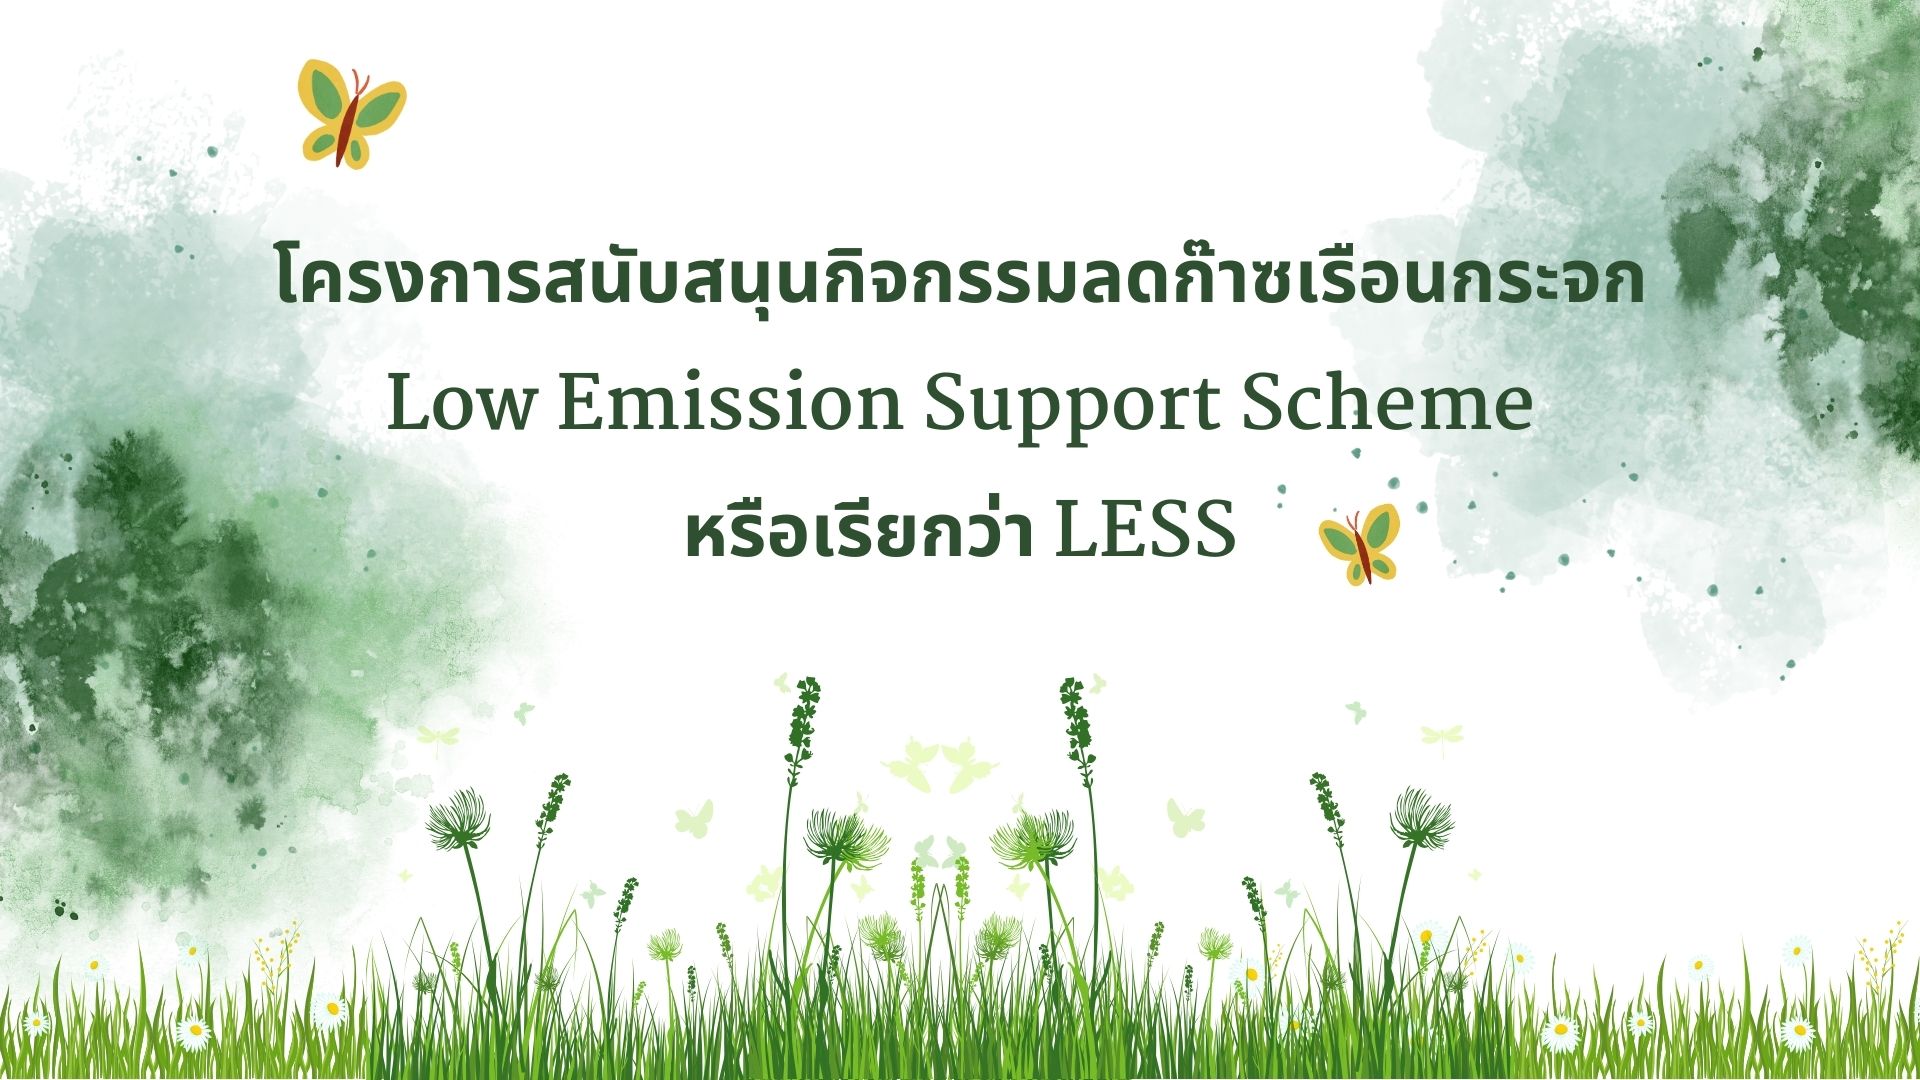 โครงการสนับสนุนกิจกรรมลดก๊าซเรือนกระจก Low Emission Support Scheme หรือเรียกว่า LESS